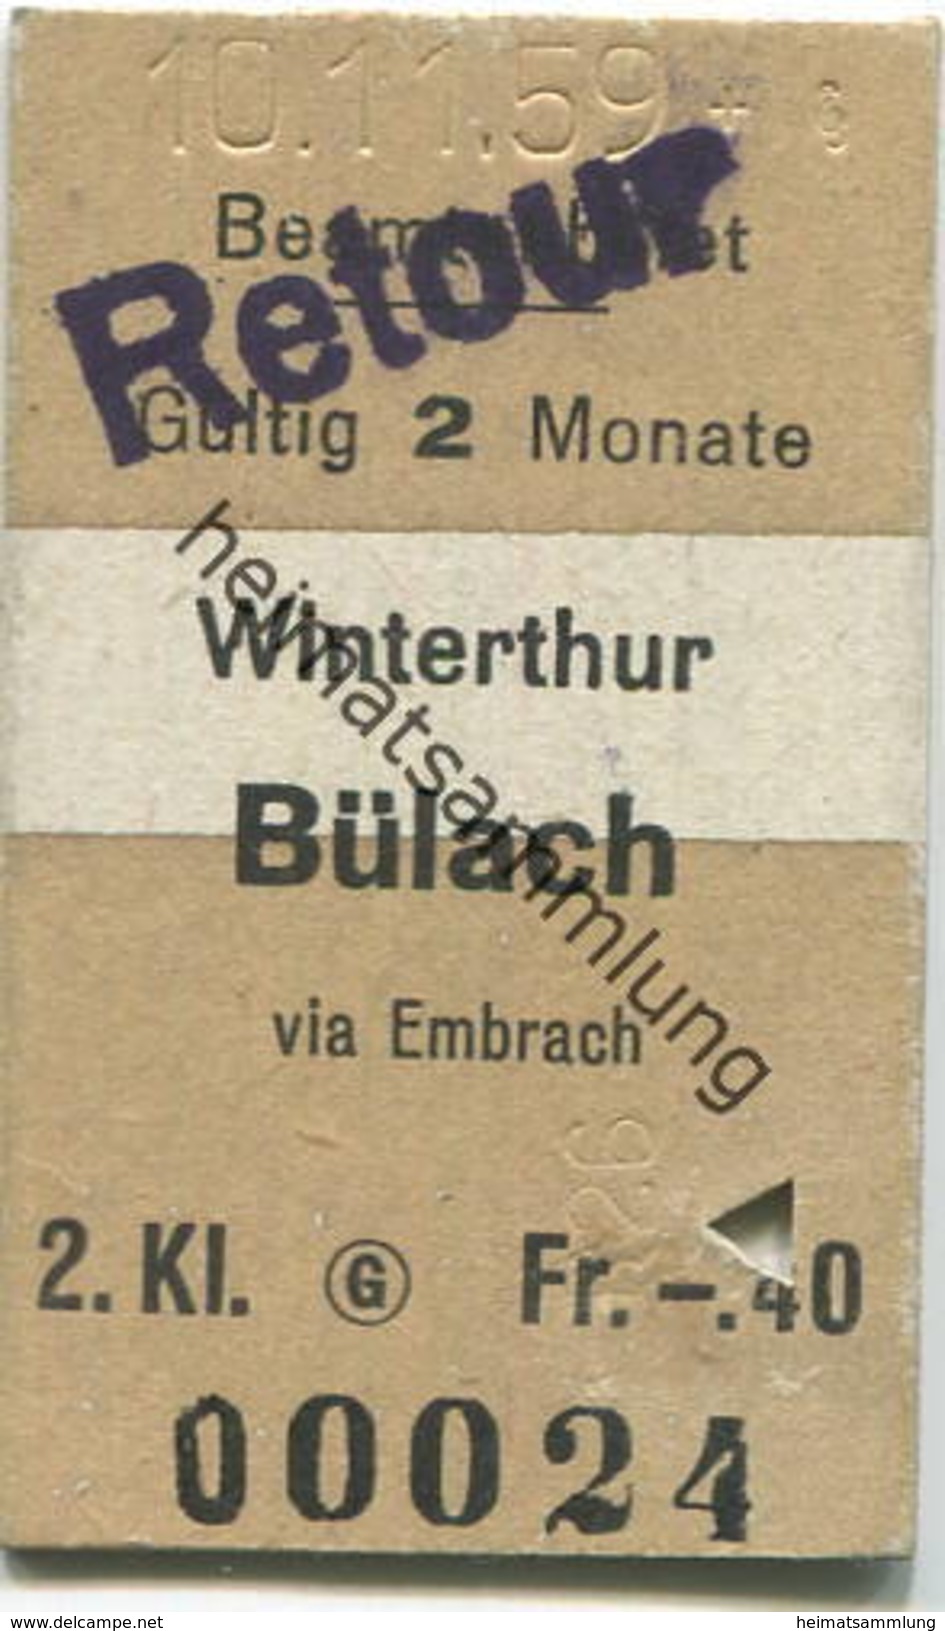 Schweiz - Beamtenbillet - Winterthur Bülach Stempel Retour - Fahrkarte 2. Kl. 1959 - Europa